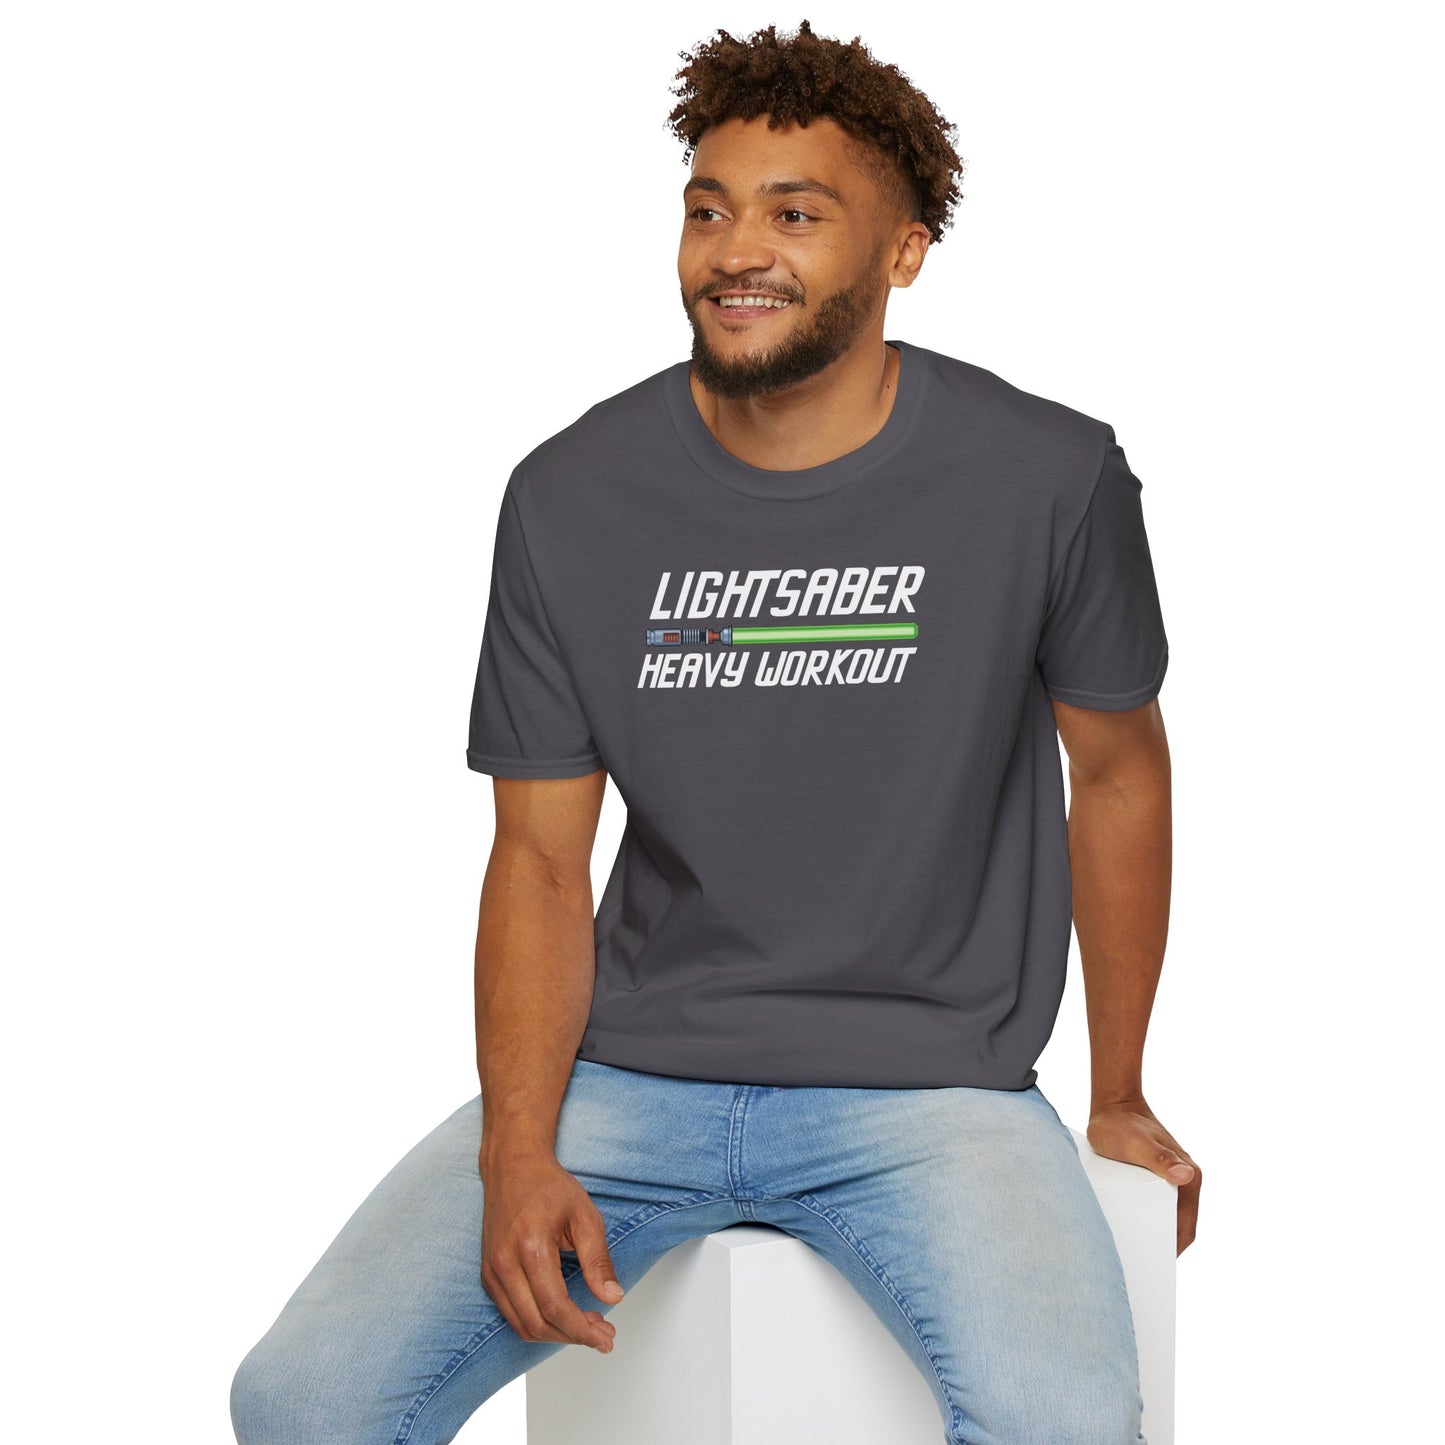 Green Lightsaber Heavy Workout